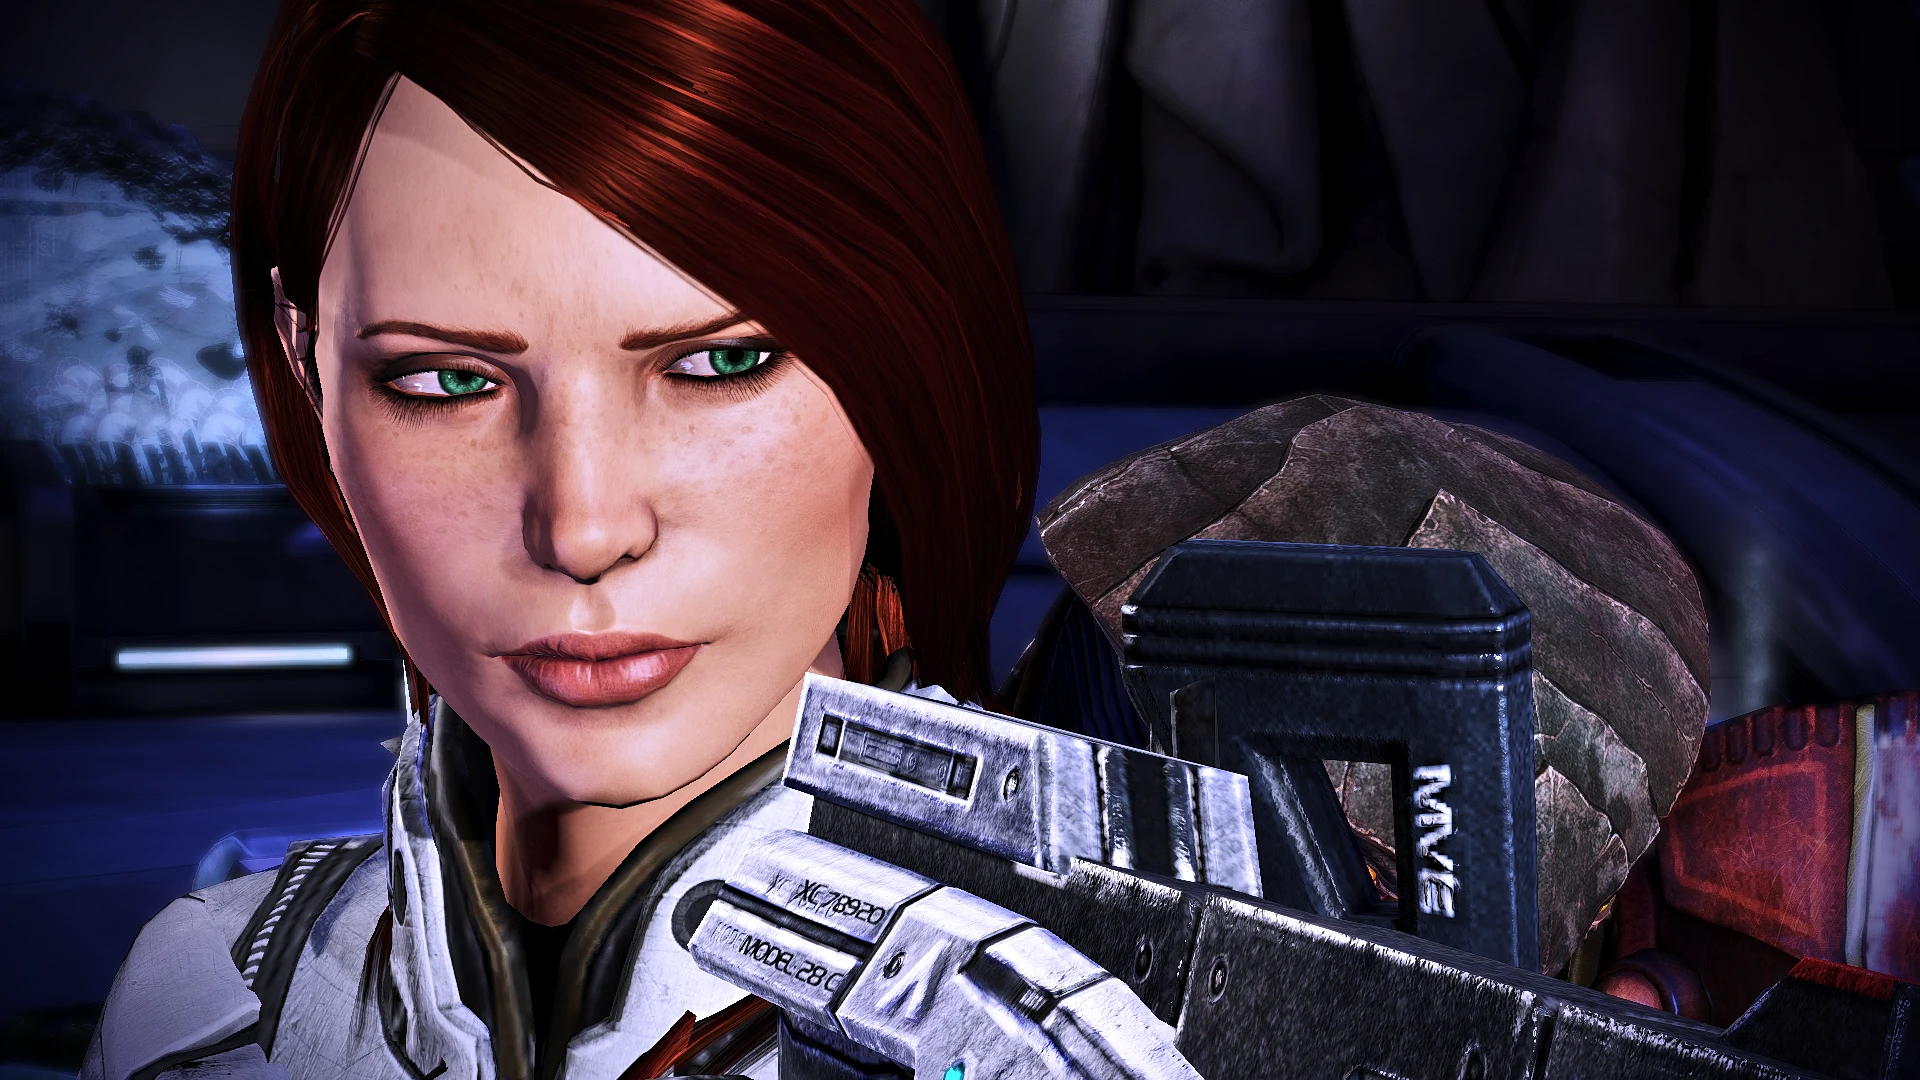 Stuff at Mass Effect 3 Nexus - Mods and community